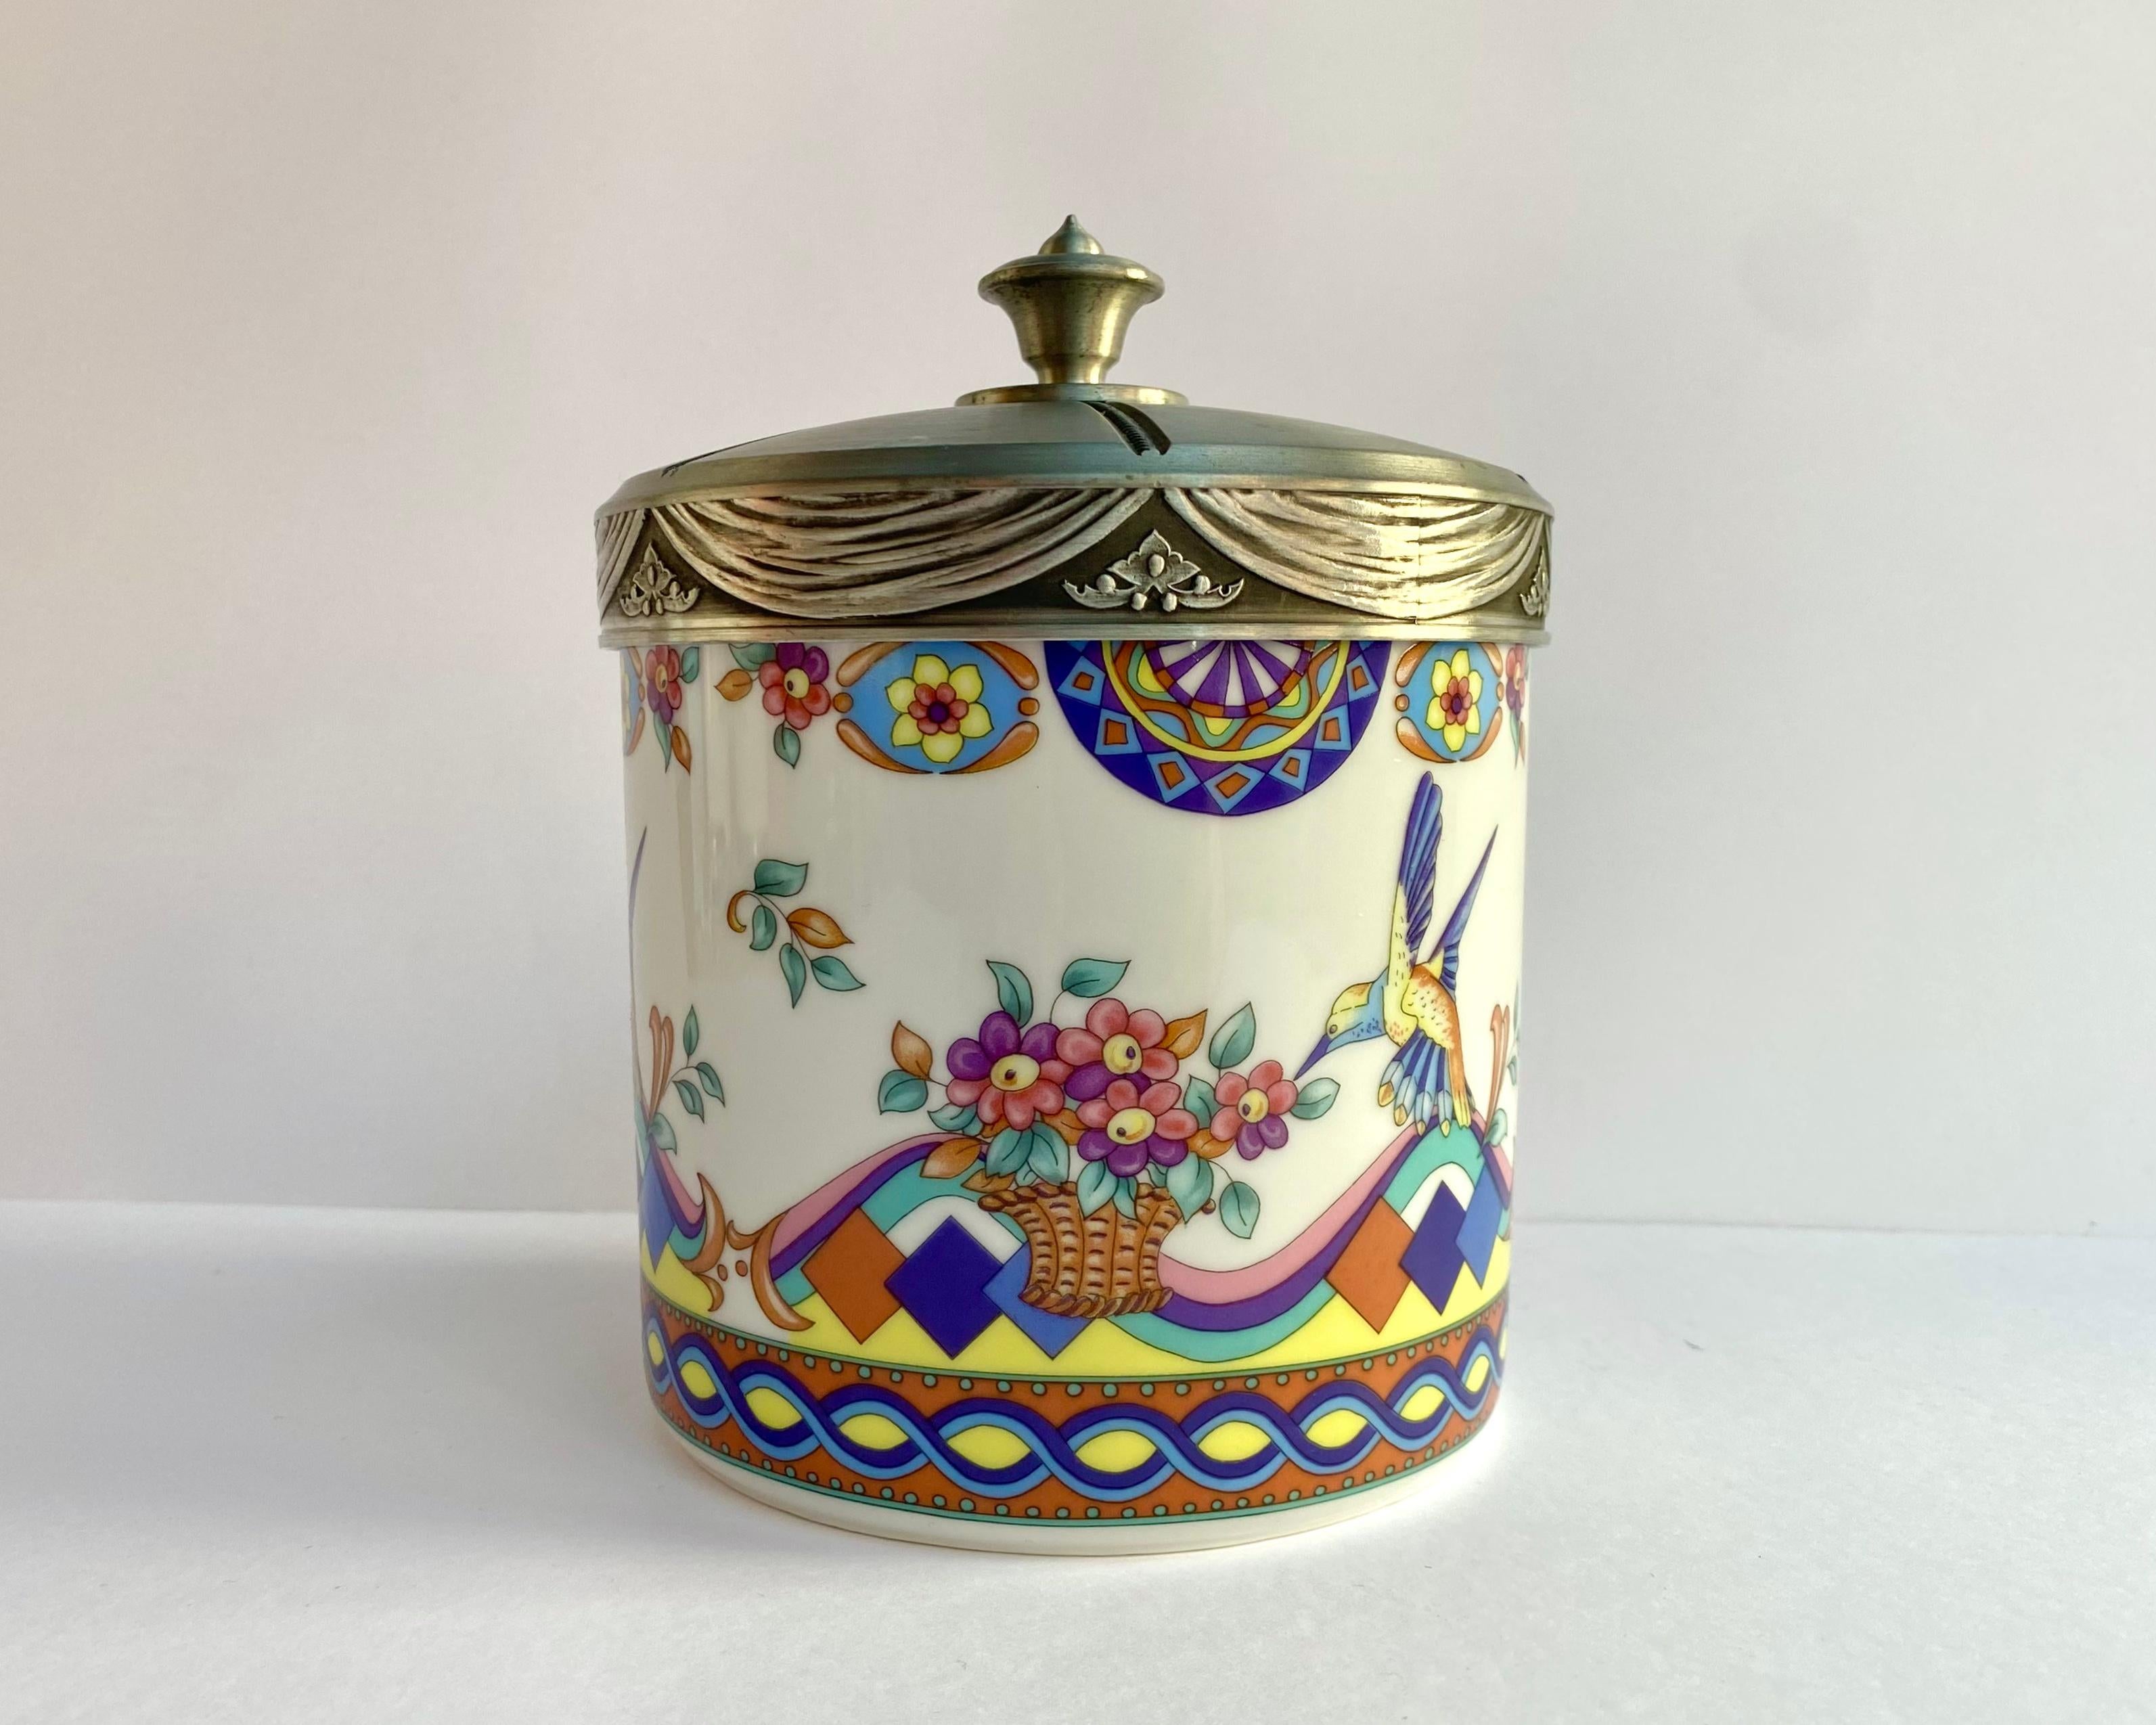 Très coloré Vintage By By Biscuit Tin en Porcelaine avec du plomb d'étain.  par Seltmann Weiden, d'Allemagne, le motif du colibri et des fleurs date de 1995.

Quel beau cadeau pour un collectionneur d'étain.

S'ouvre et se ferme hermétiquement.

Un